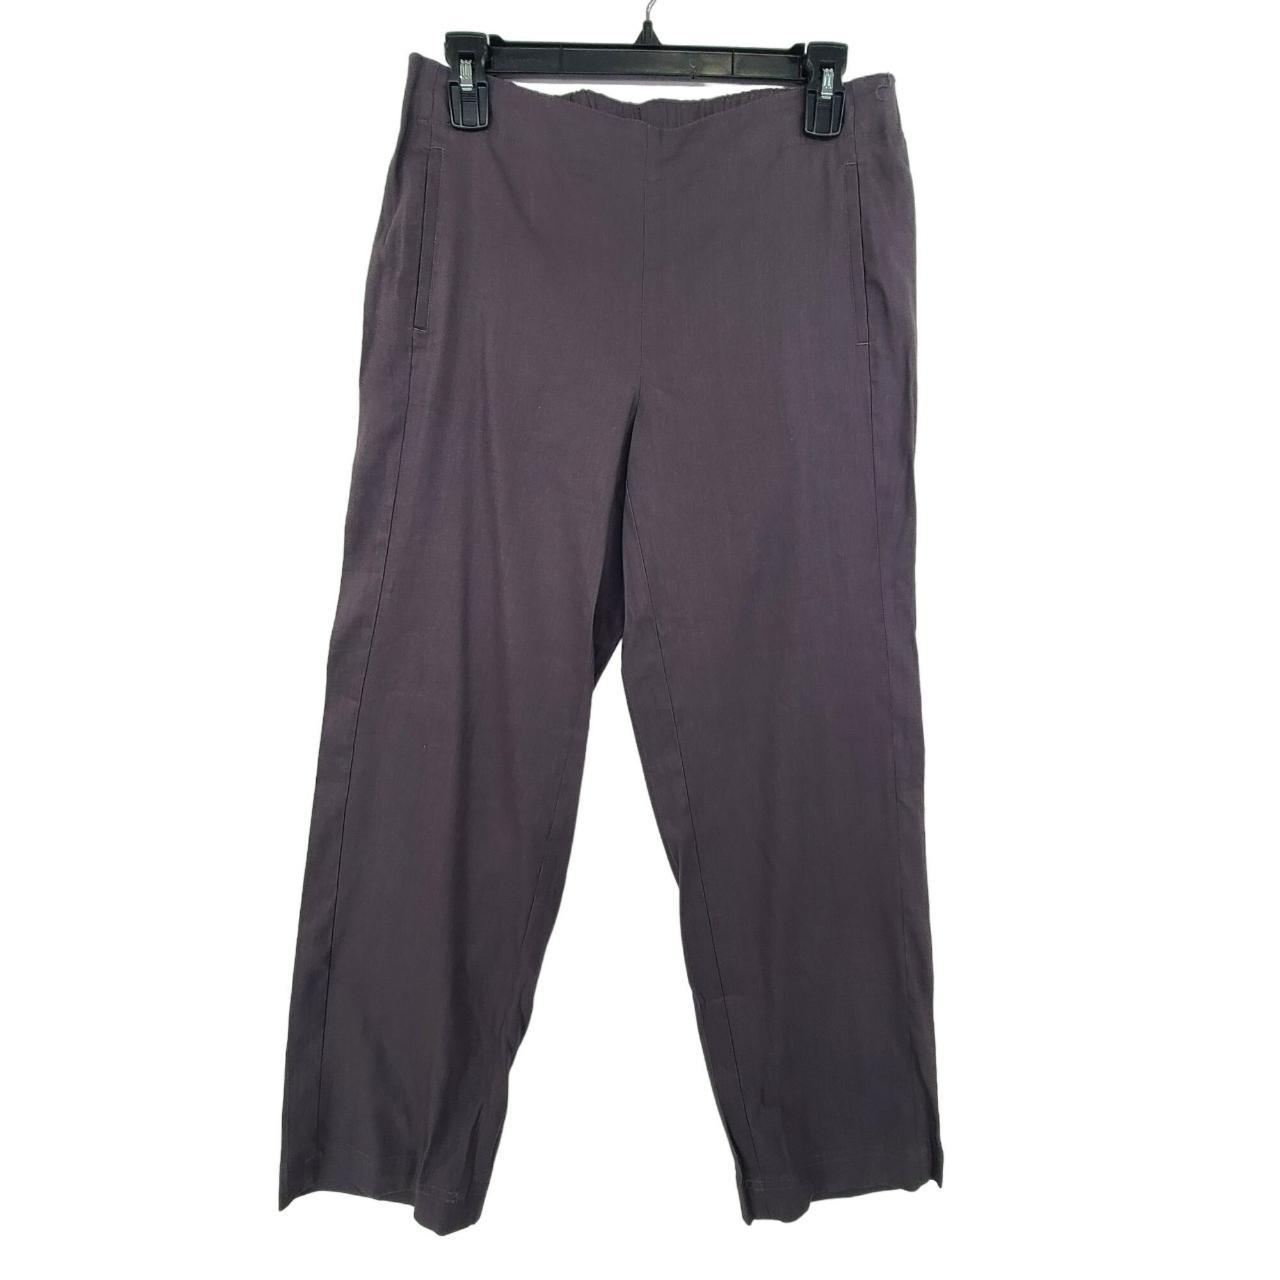 J. Jill Women's Casual Stretch Pants Gray Size... - Depop